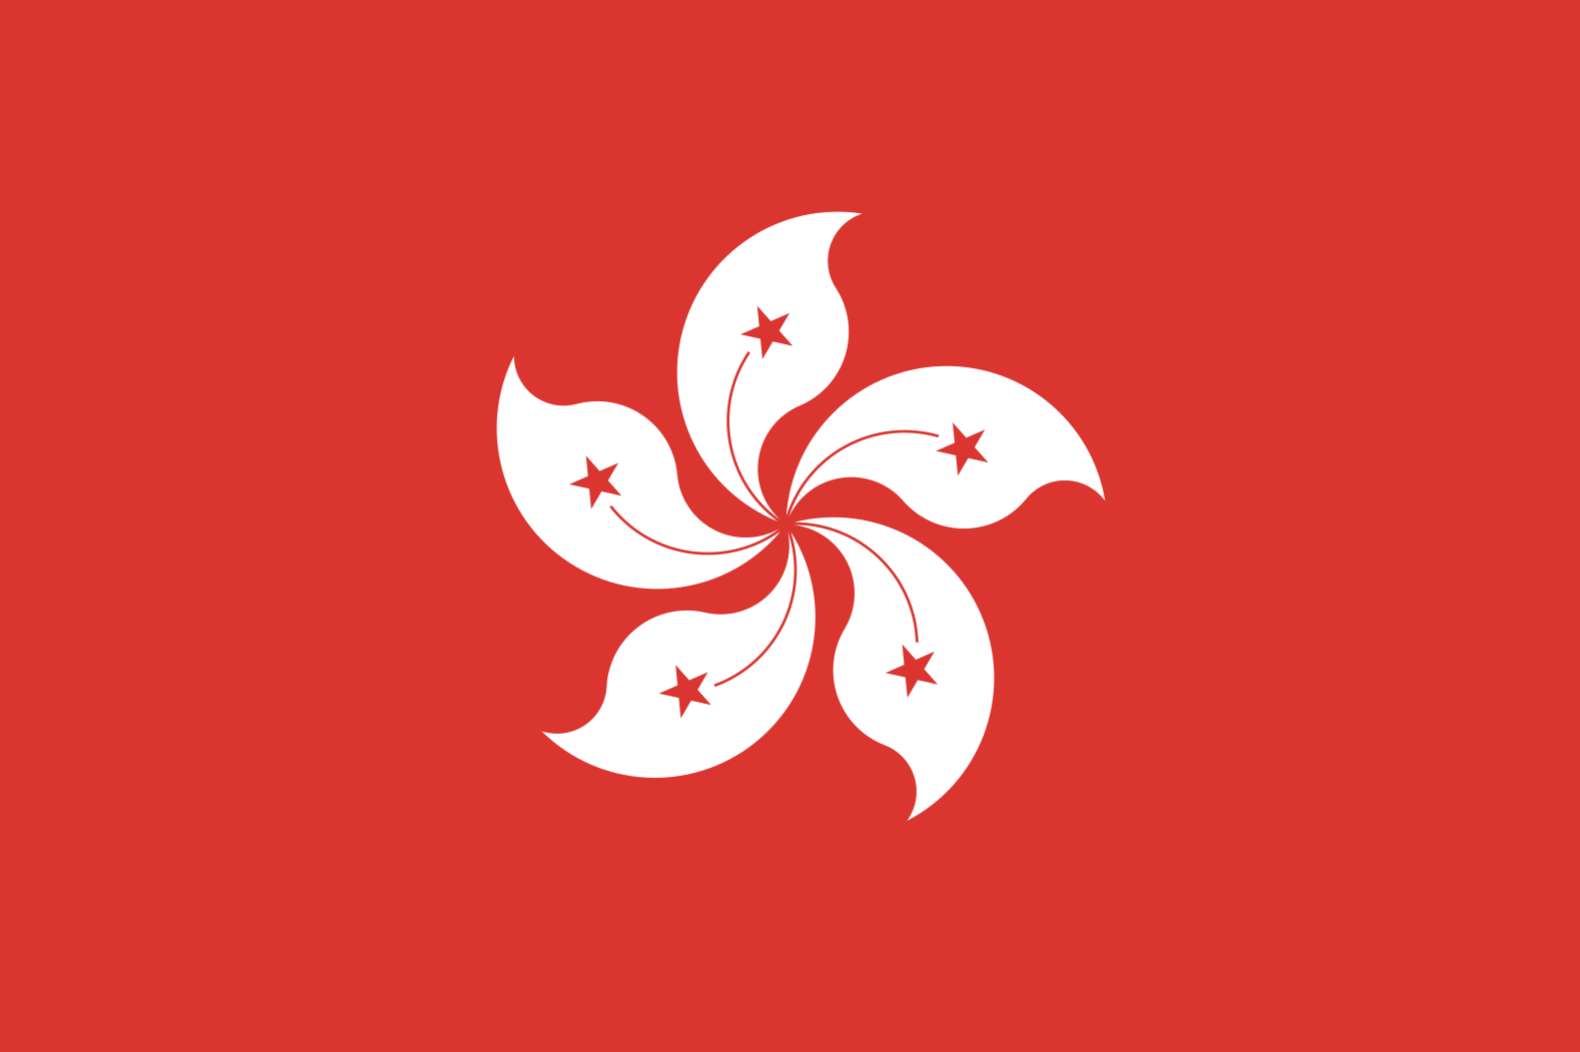 Hong Kong - proxy